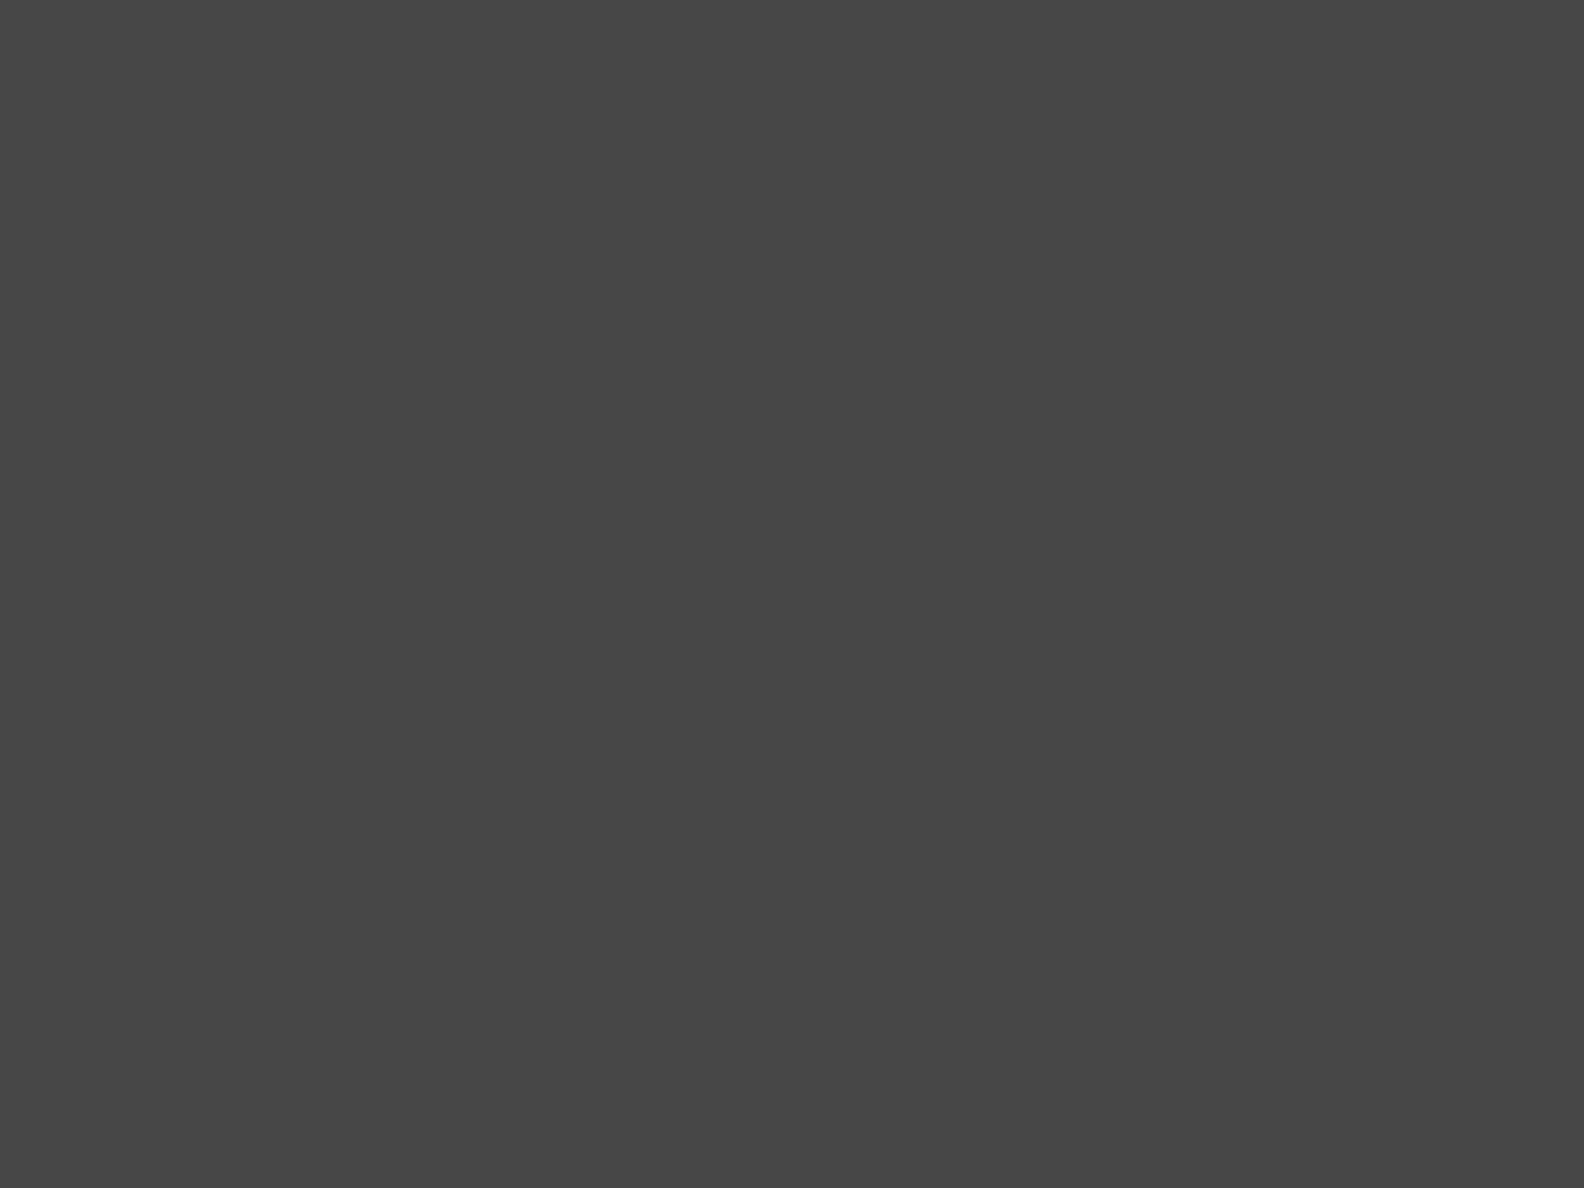 Леонид Броневой в роли Мюллера (слева) и Вячеслав Тихонов в роли Штирлица в многосерийном художественном телефильме Татьяны Лиозновой «Семнадцать мгновений весны» (1974)